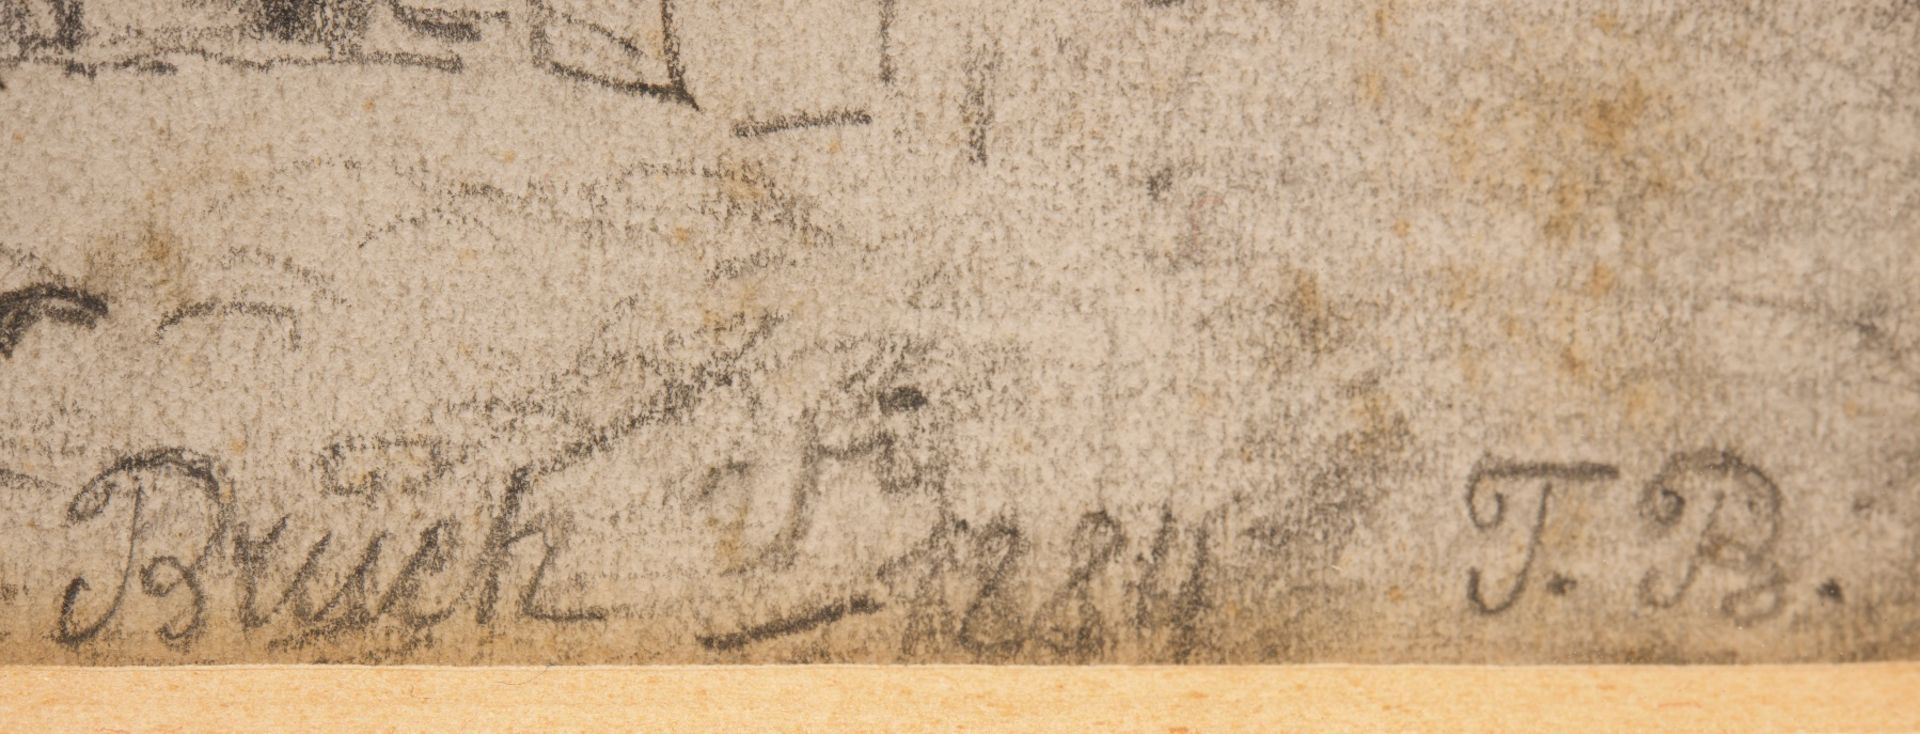 Signiert mit "T. Blau", Bleistift auf Papier, Skizze eines Innenhofs | "T. Blau", Old Sketch of a Co - Bild 4 aus 5